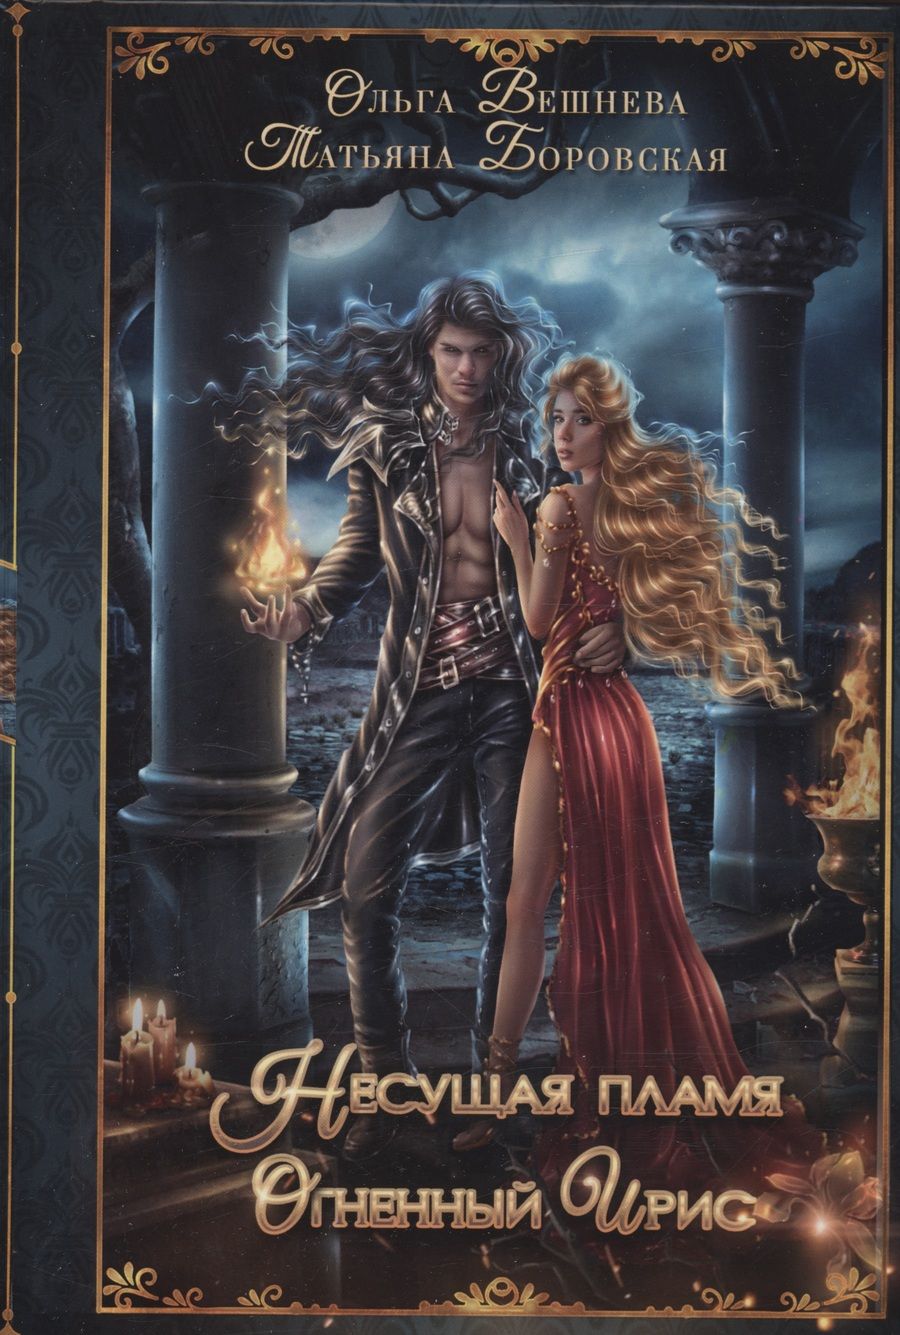 Обложка книги "Вешнева, Боровская: Огненный ирис"